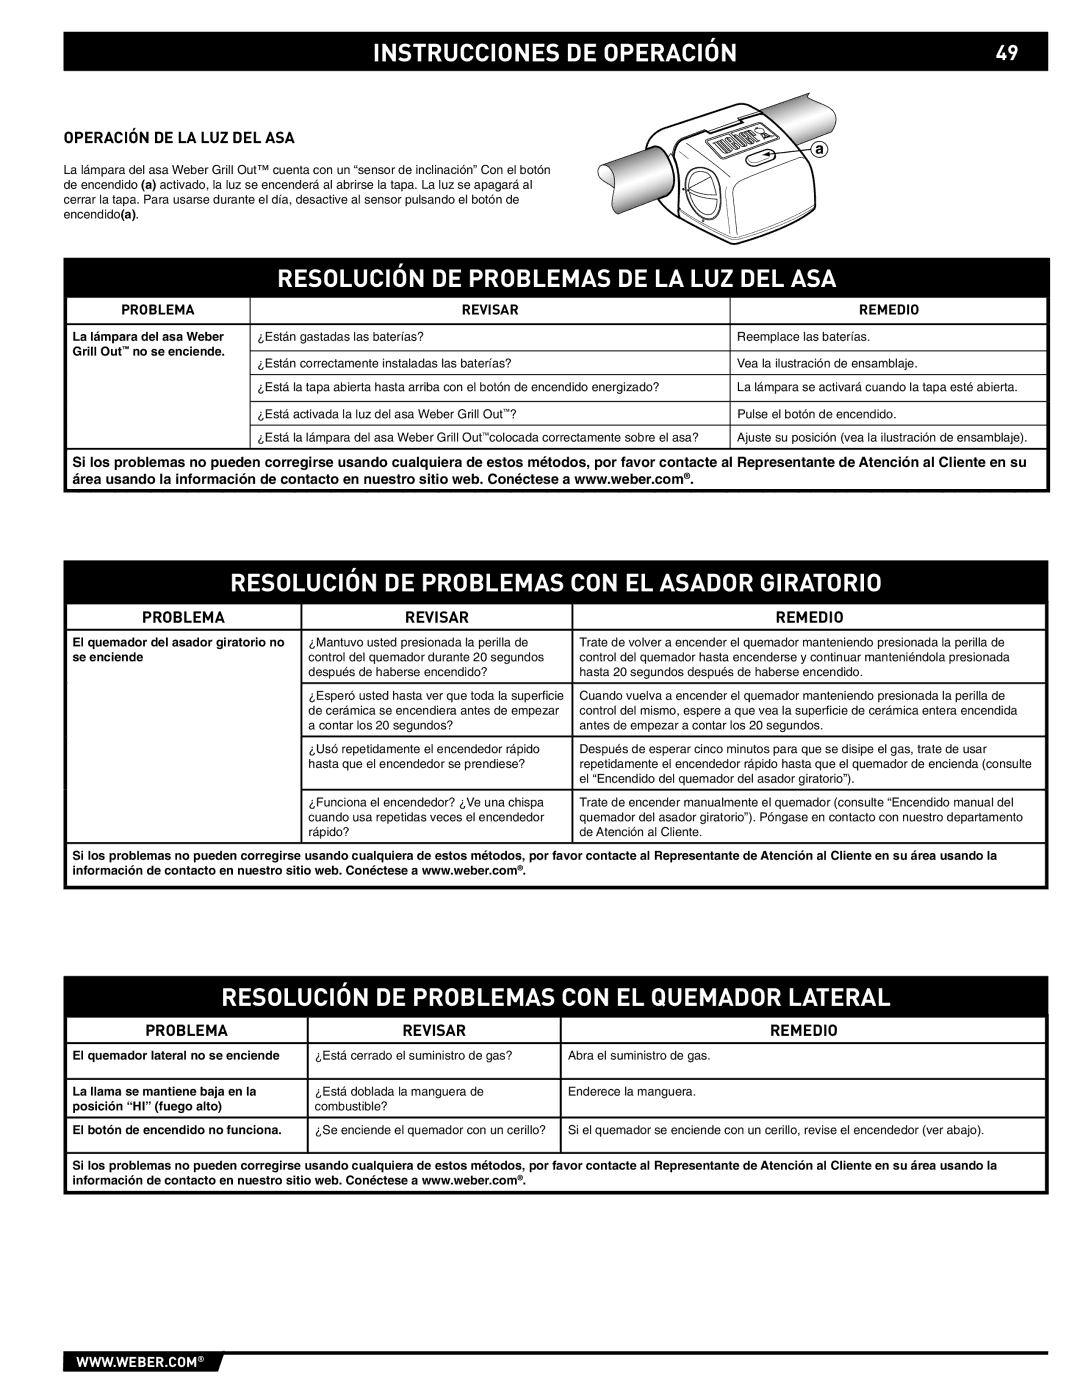 Weber 89561 manual Resolución DE Problemas DE LA LUZ DEL ASA, Resolución DE Problemas CON EL Asador Giratorio 